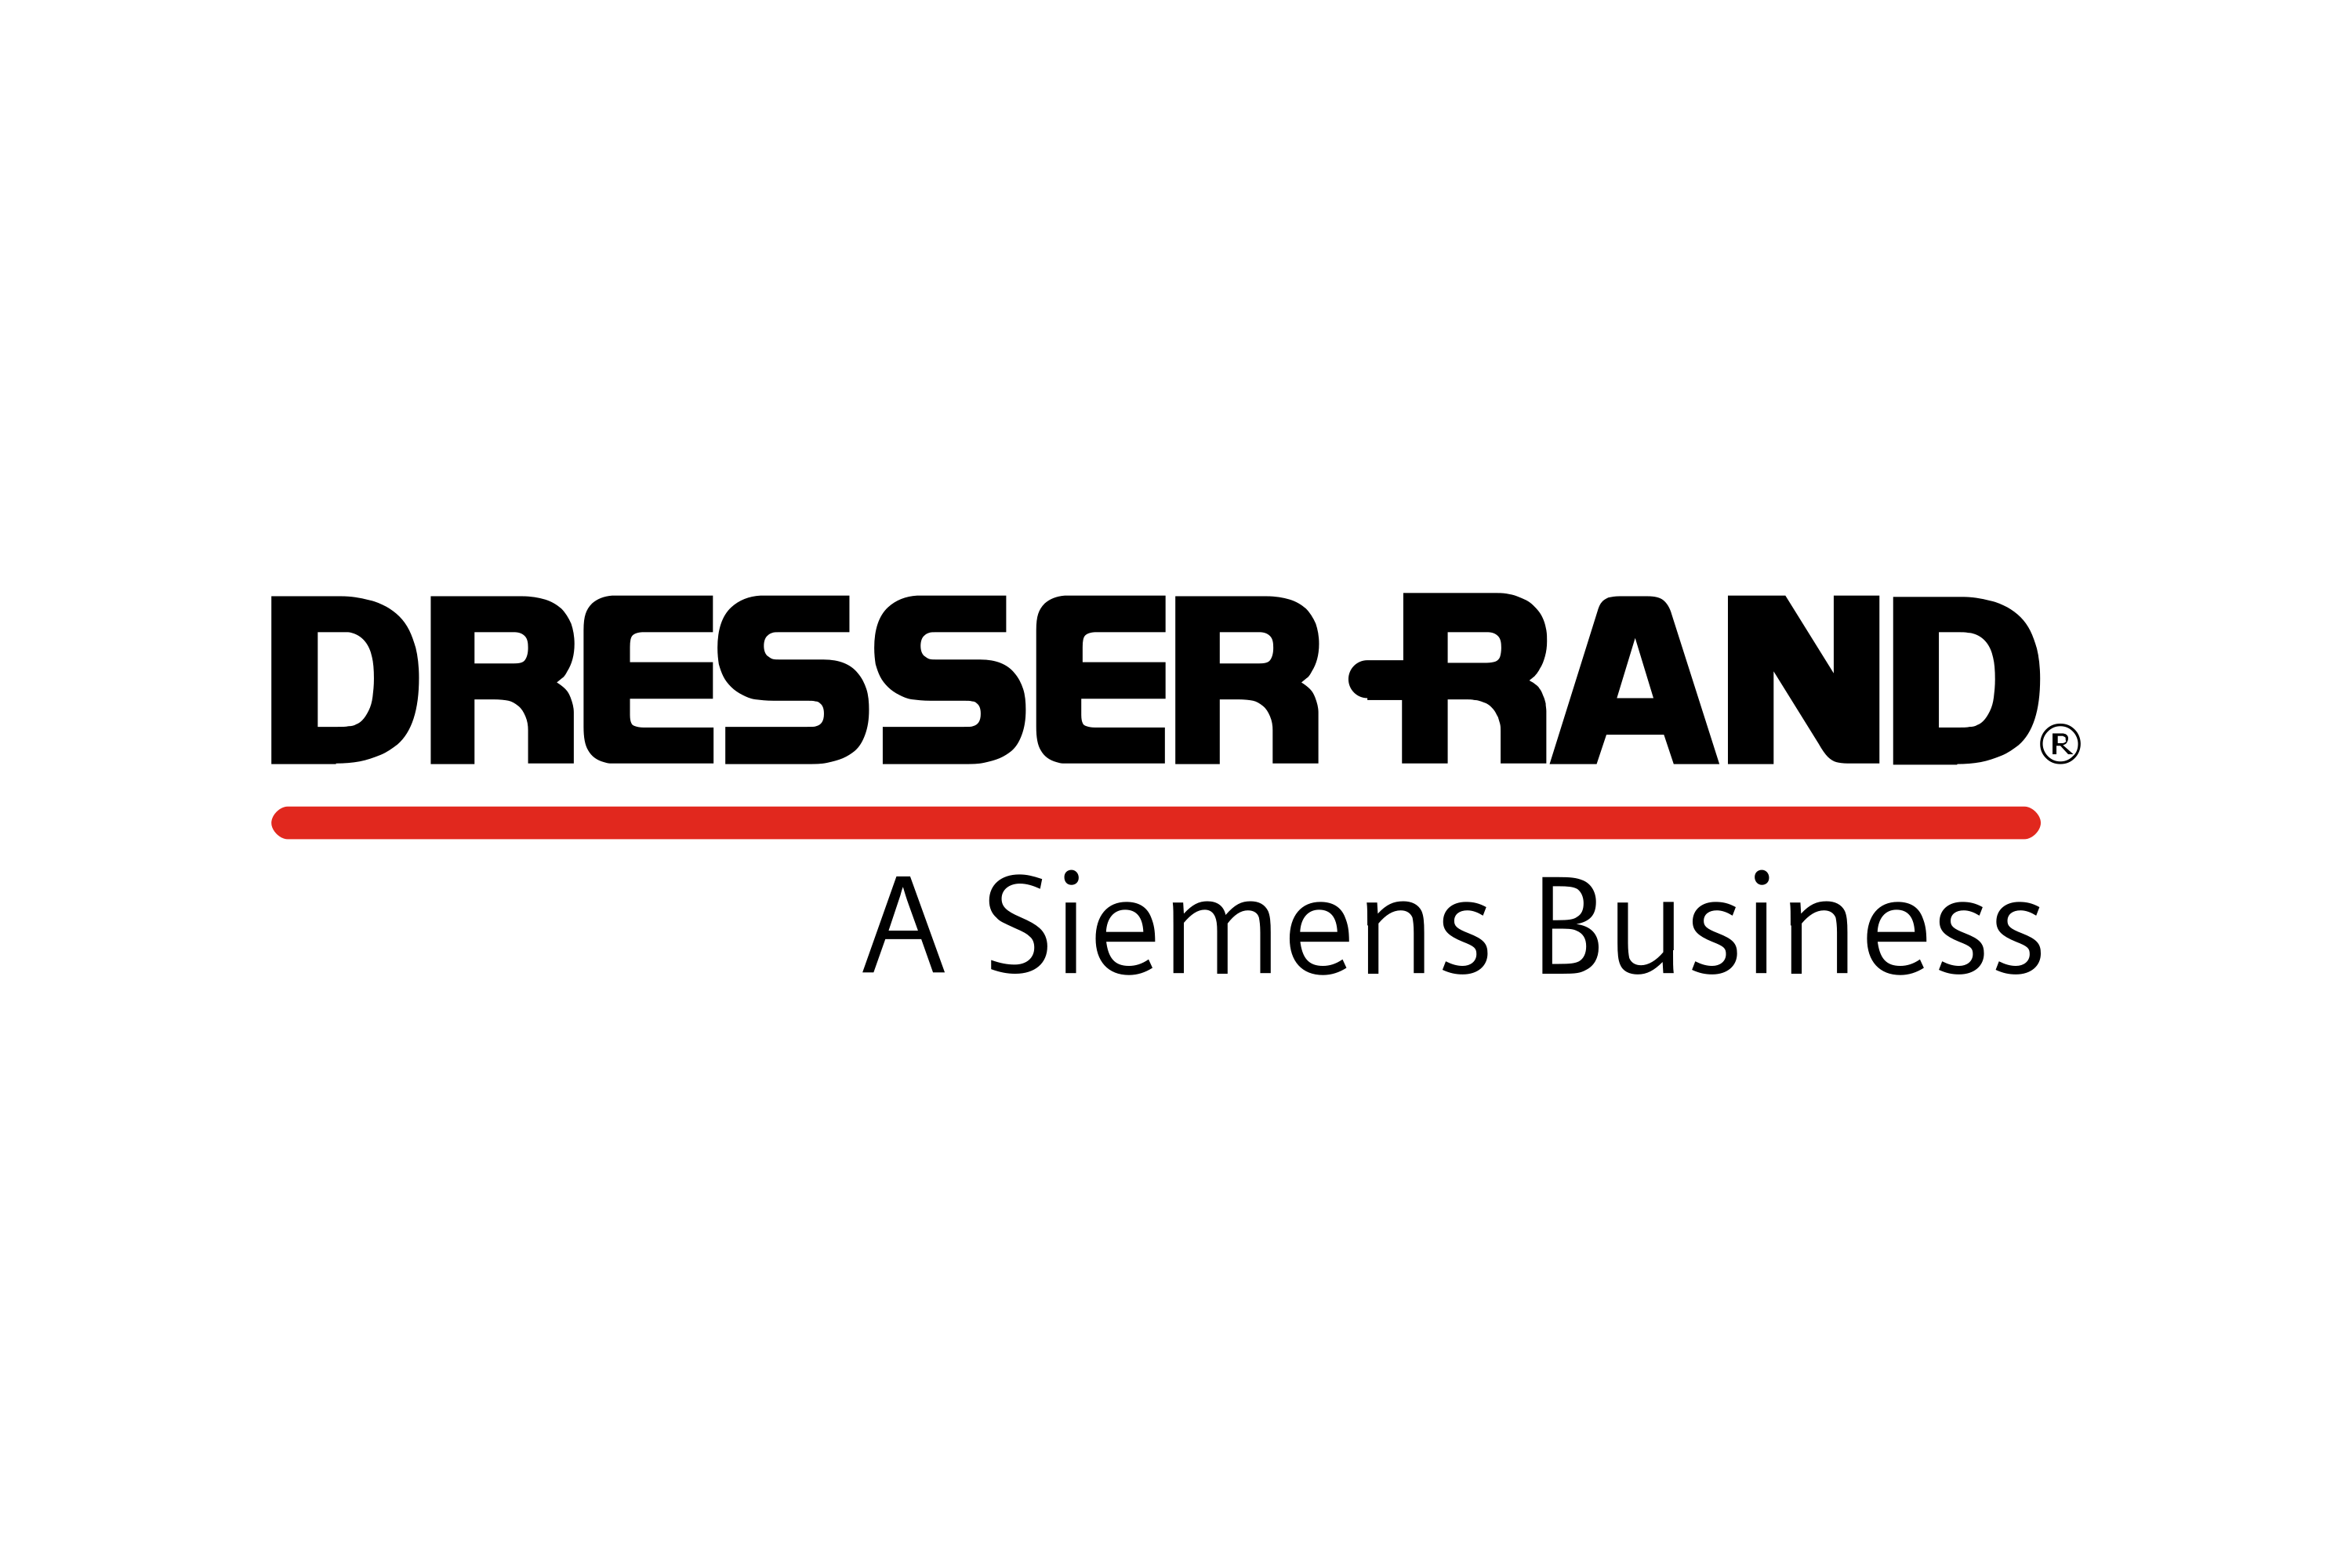 Download Dresser Rand Group Logo In Svg Vector Or Png File Format